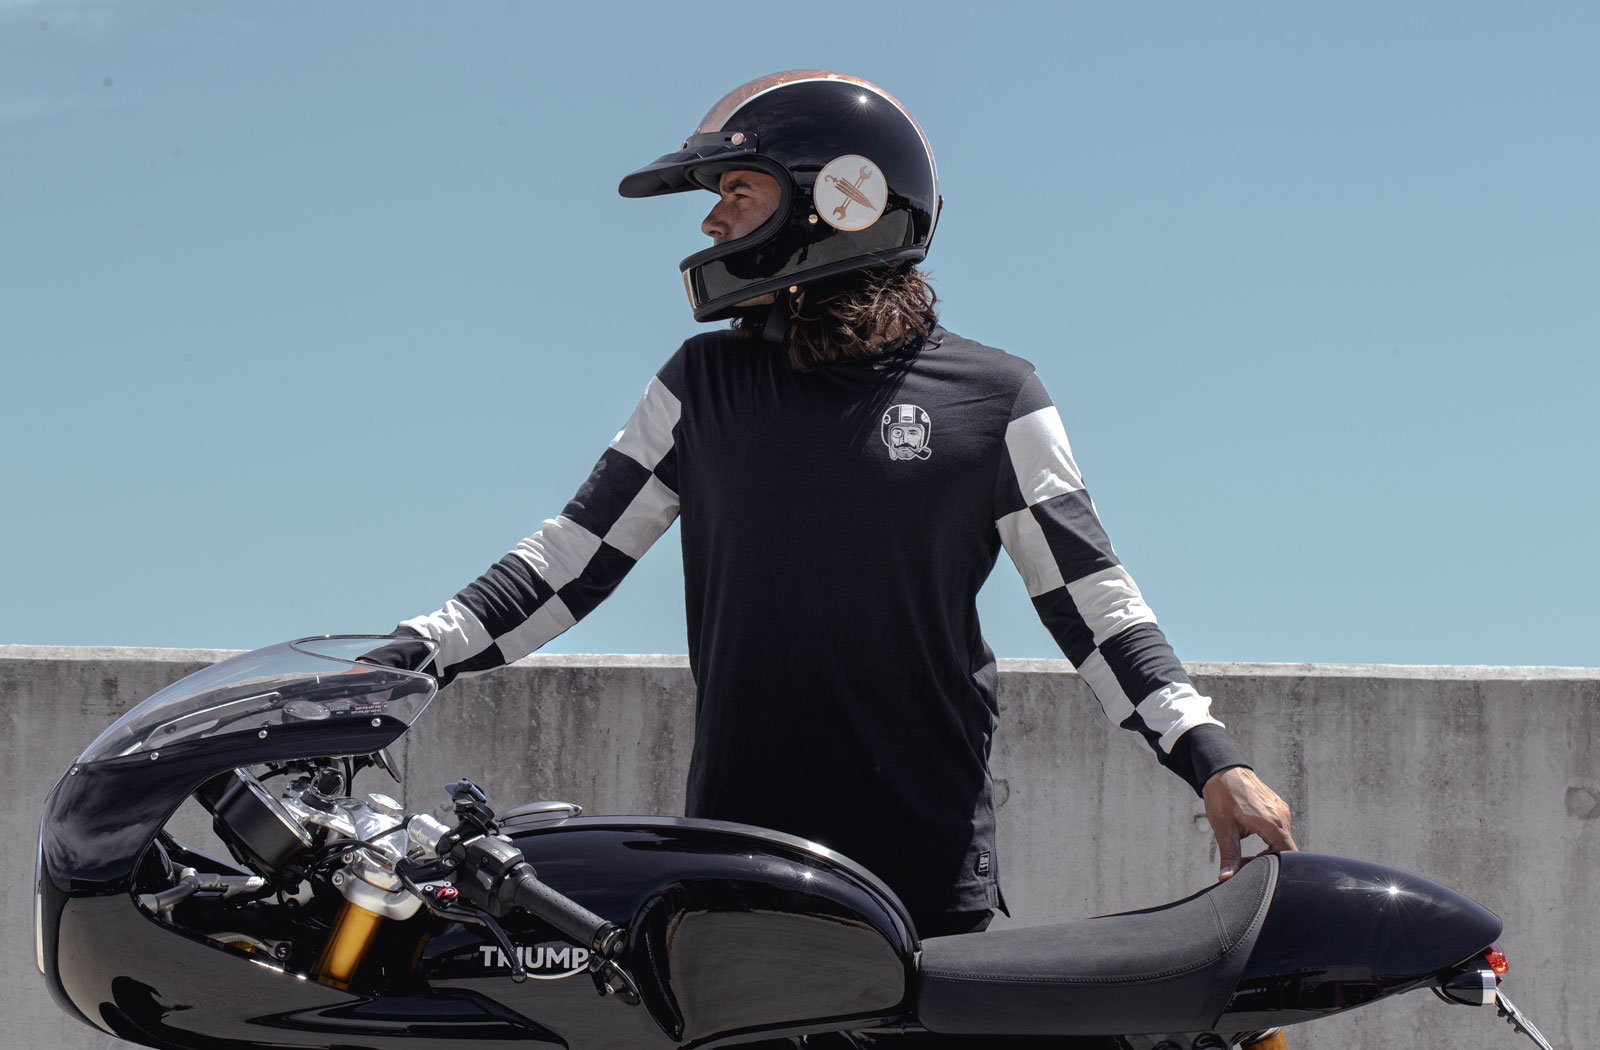 DGR x Triumph motorcycles apparel